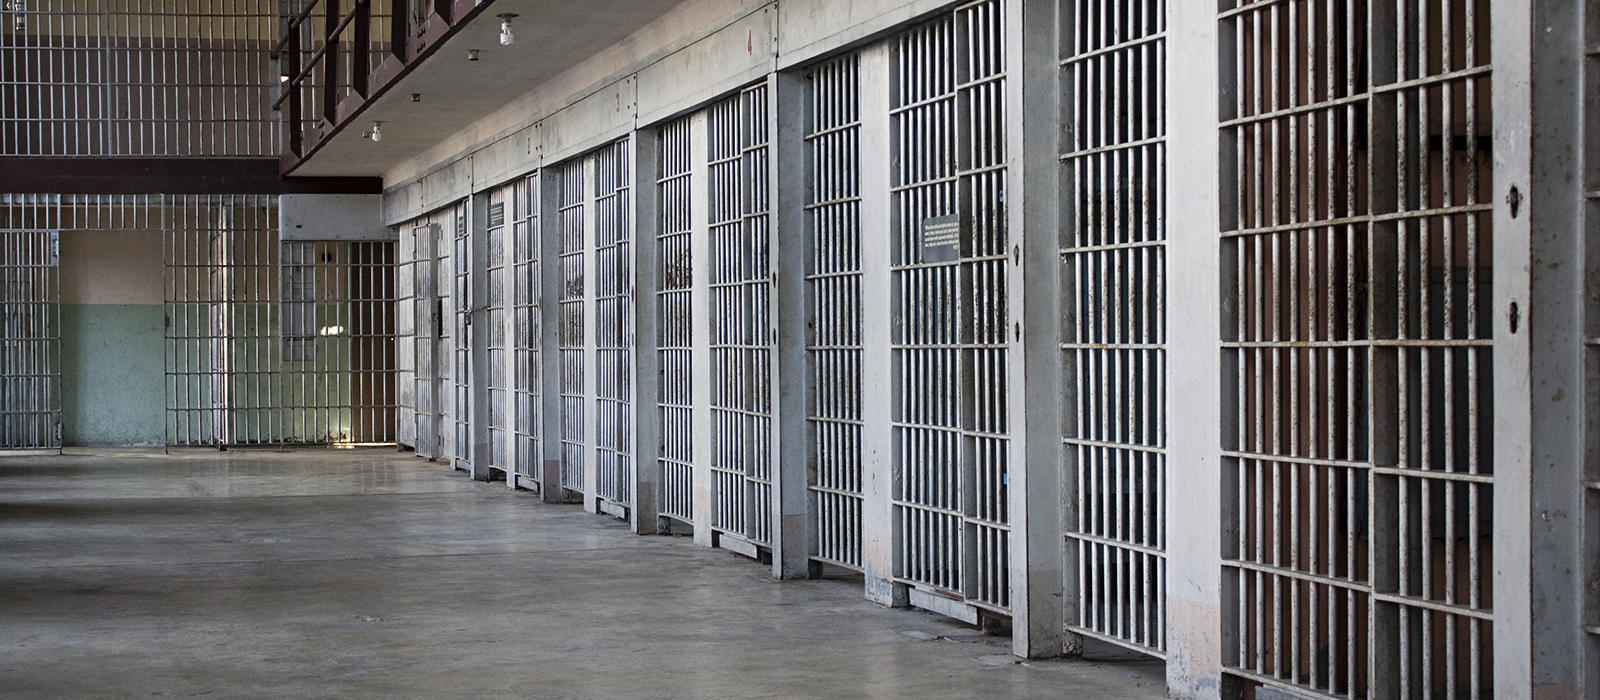 Κρατούμενοι στις φυλακές Κορυδαλλού απείλησαν με μαχαίρι και μαστίγωσαν σωφρονιστικό υπάλληλο